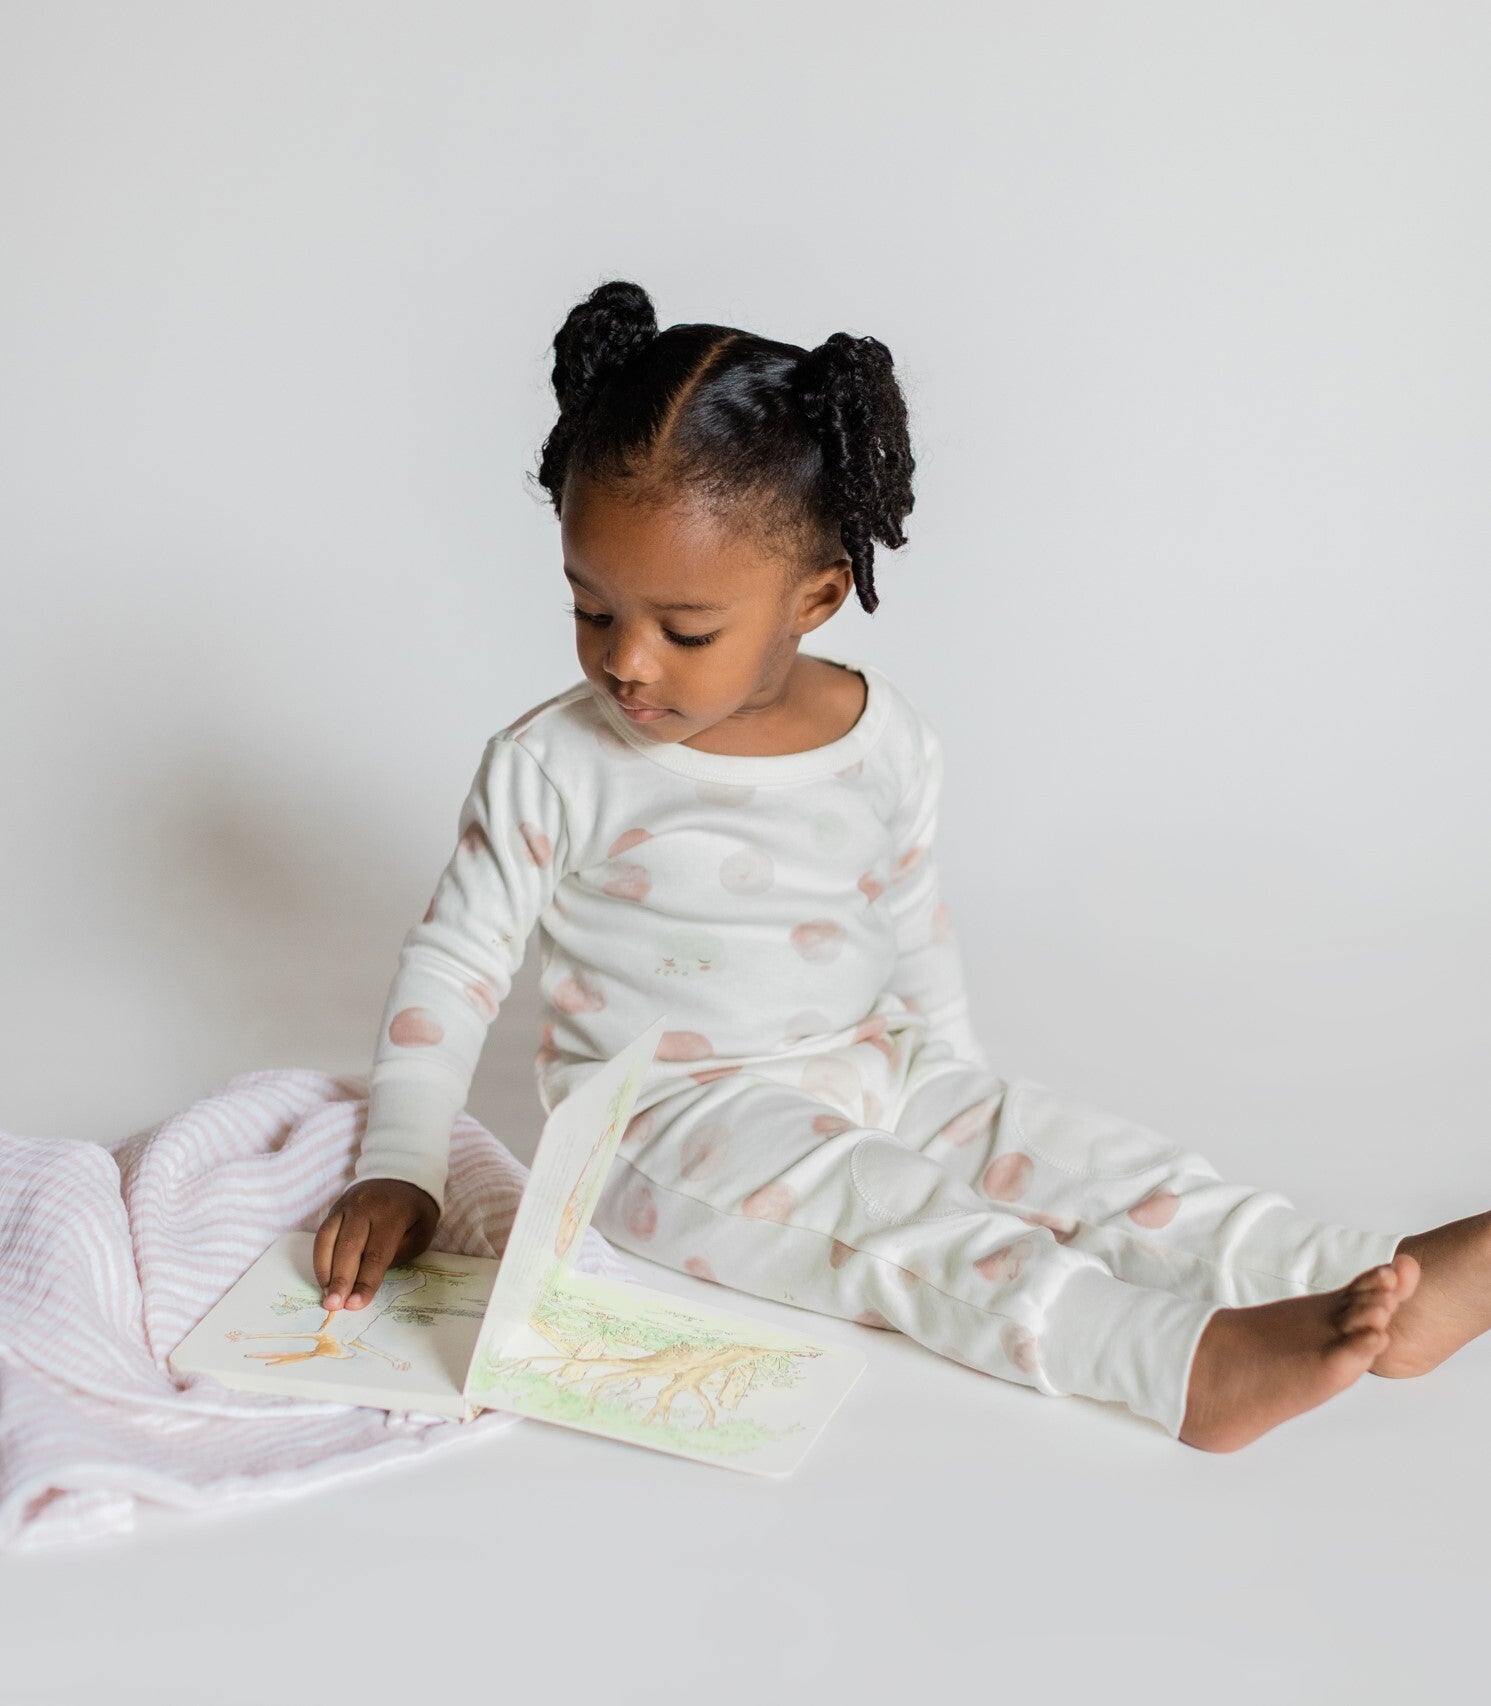 Toddler & Kids Organic Pajamas